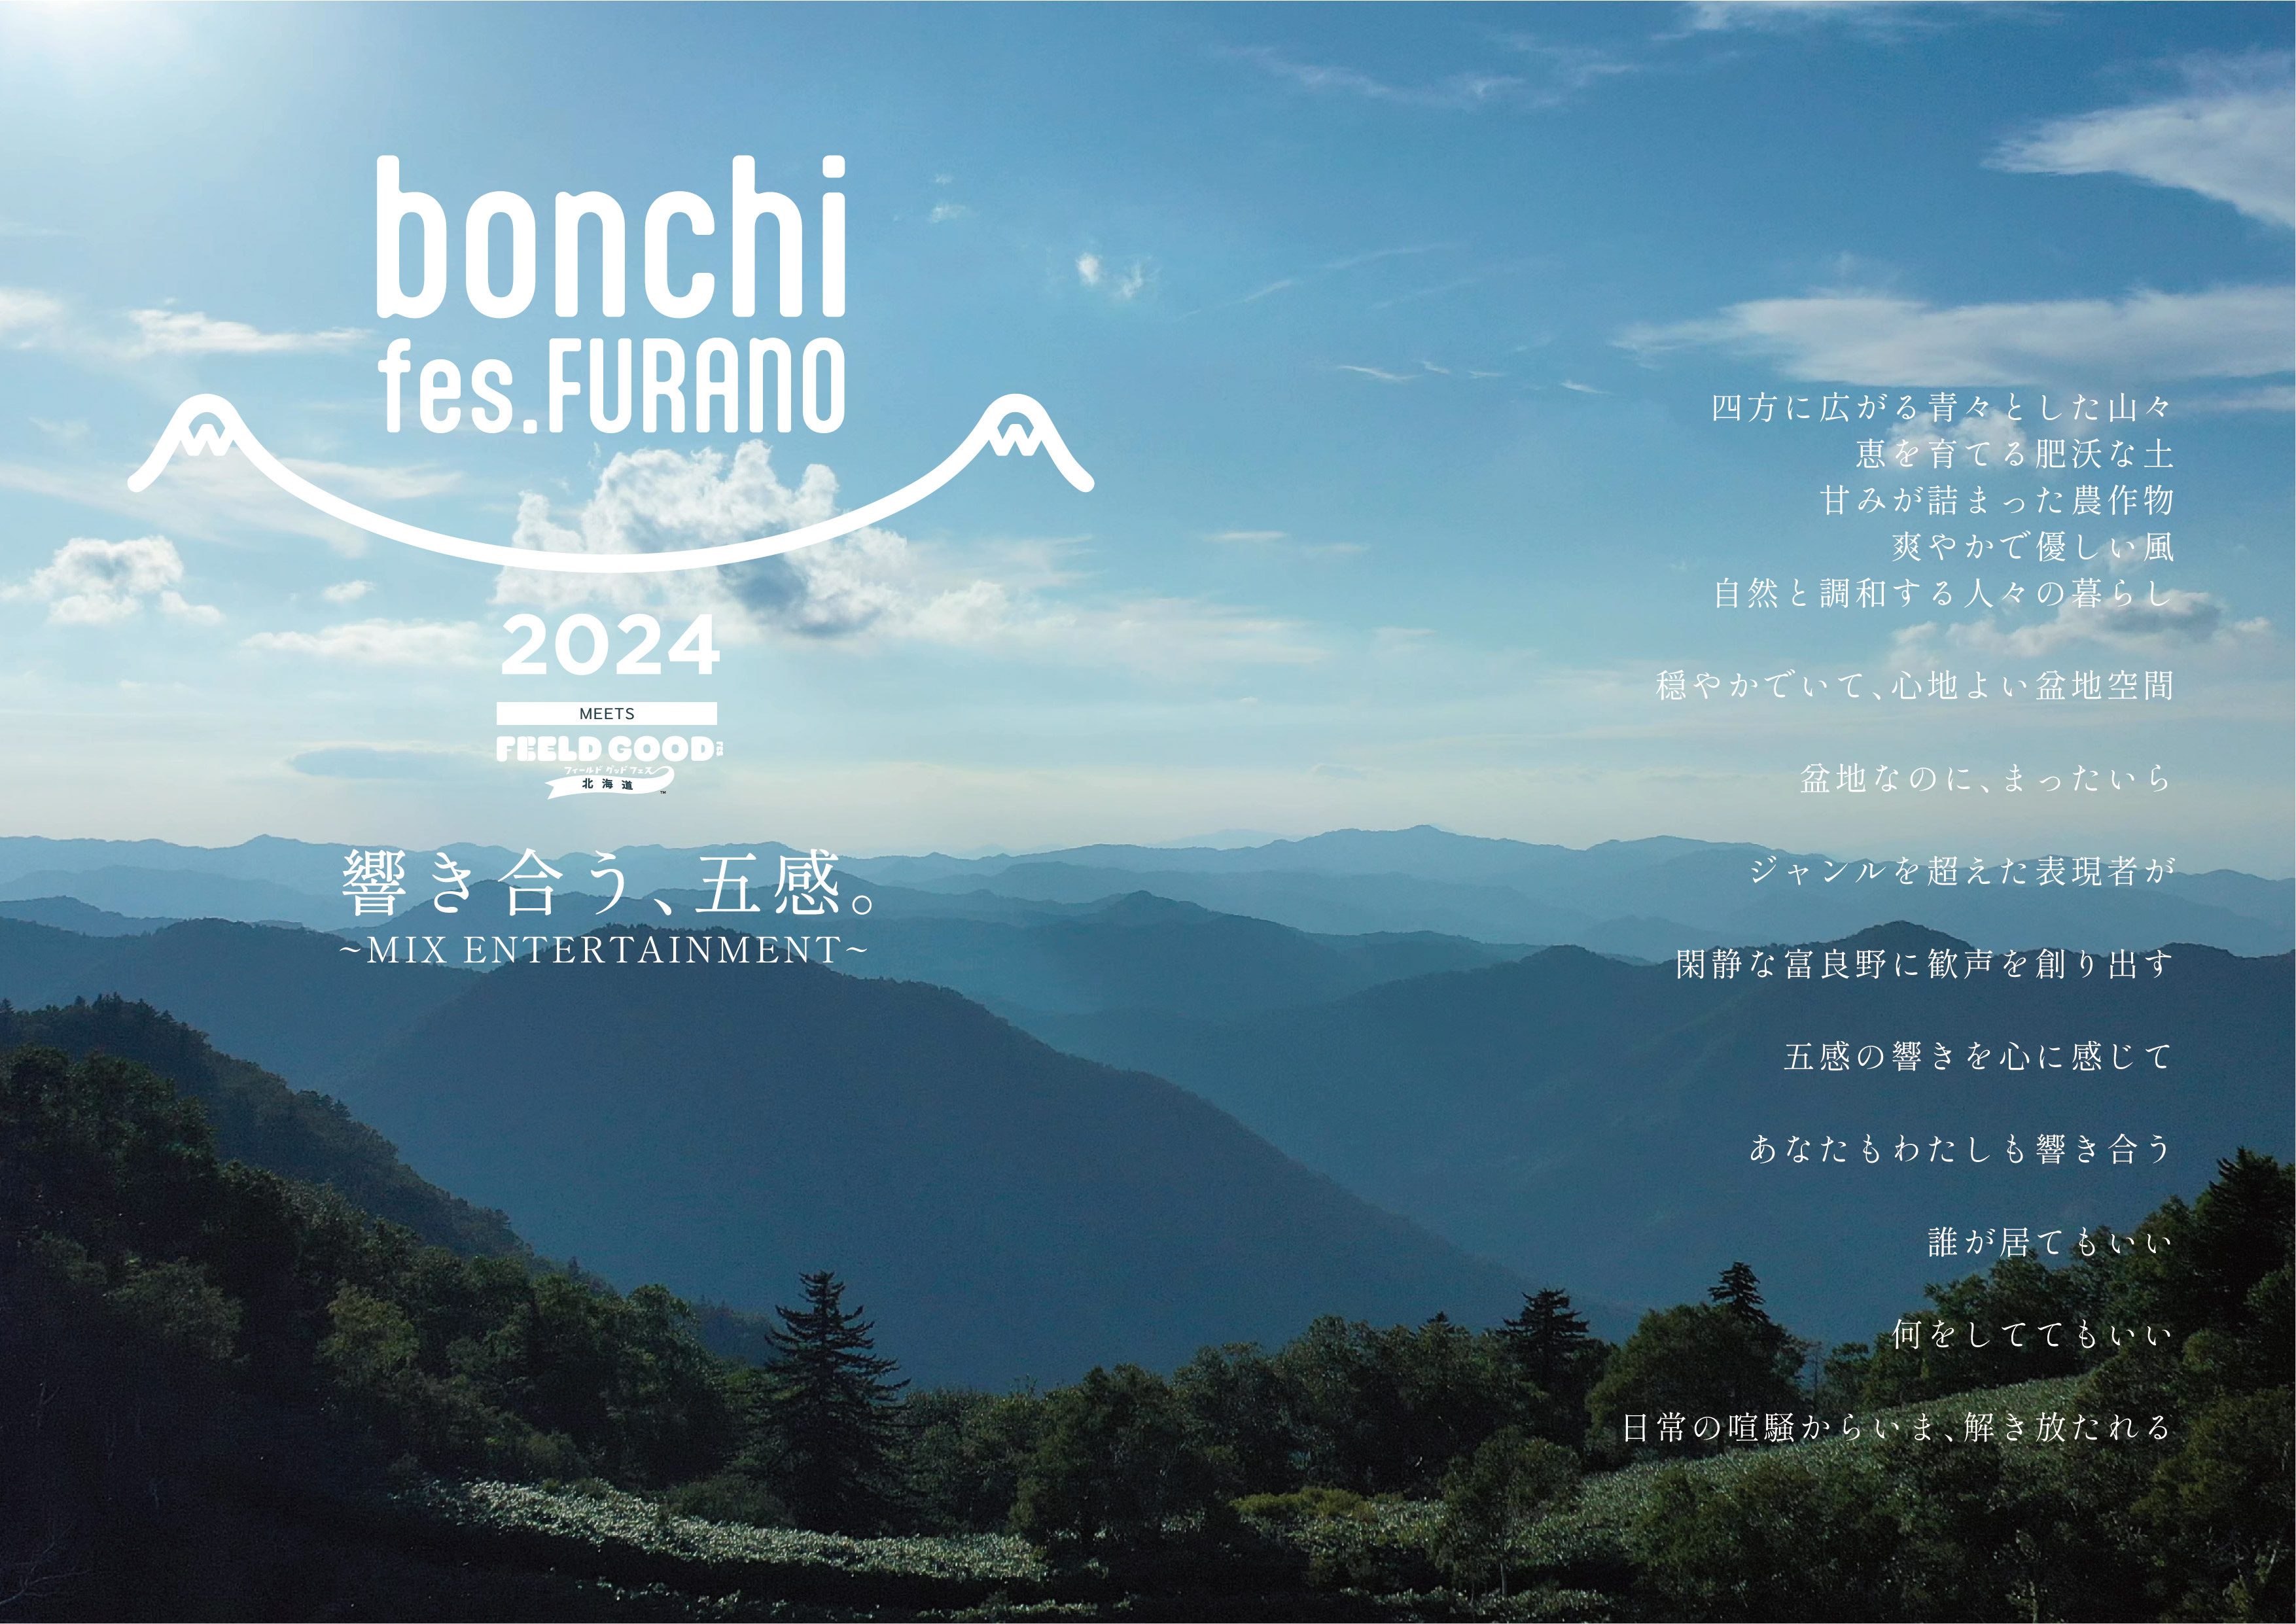 kCxǖ̑厩RŌ܊tFXIwbonchi fes. FURANO 2024 meets FEELD GOOD FES.xJÌI